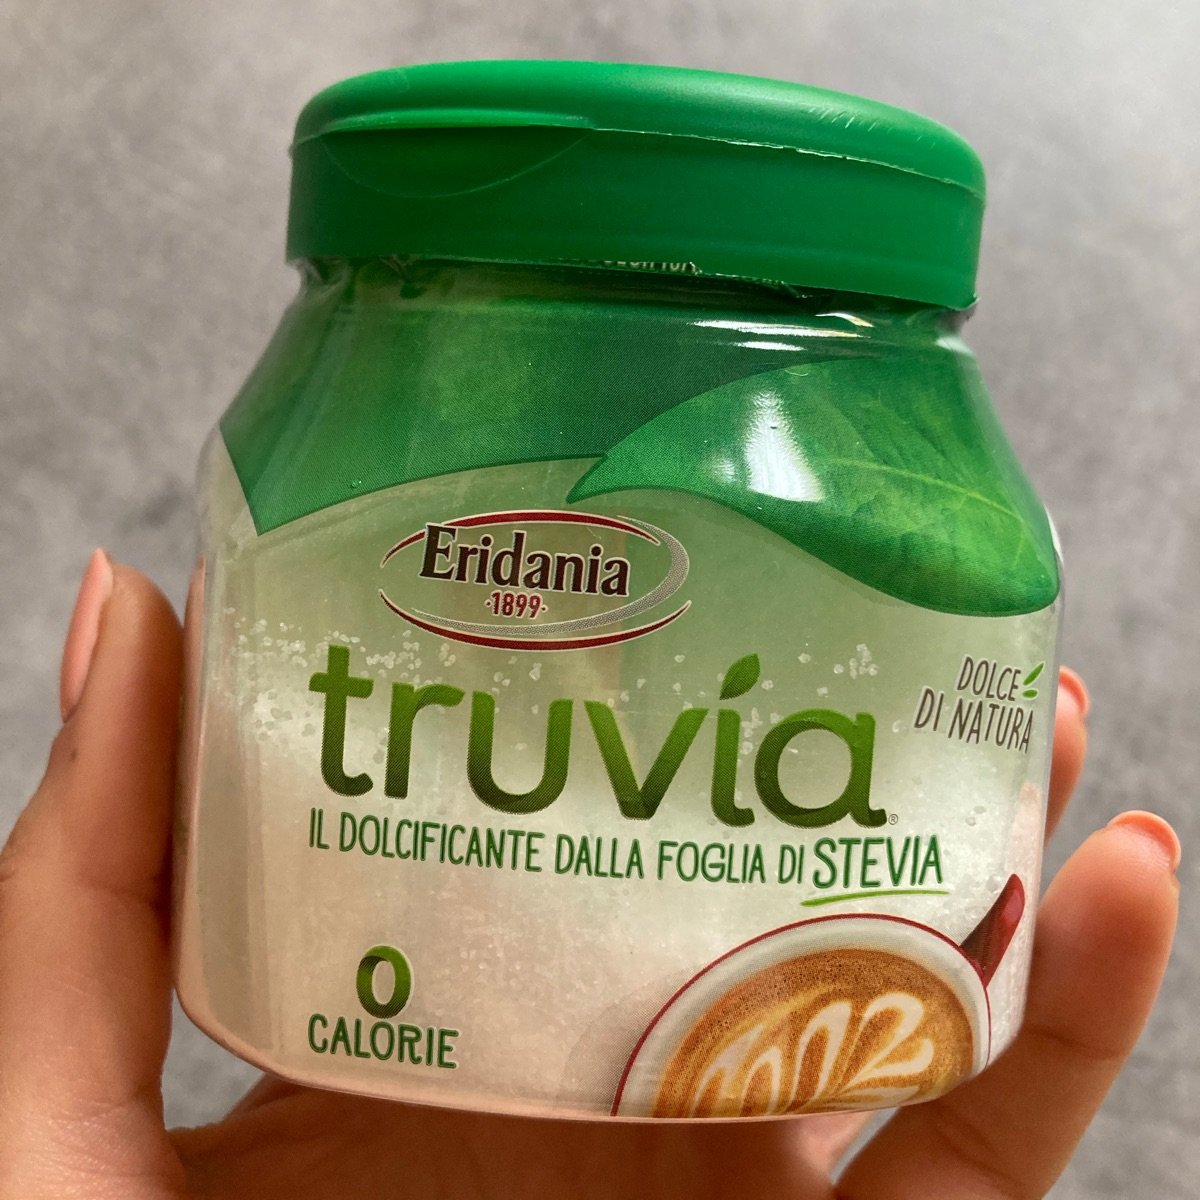 Eridania Truvia, il dolcificante dalle foglie di stevia Review | abillion